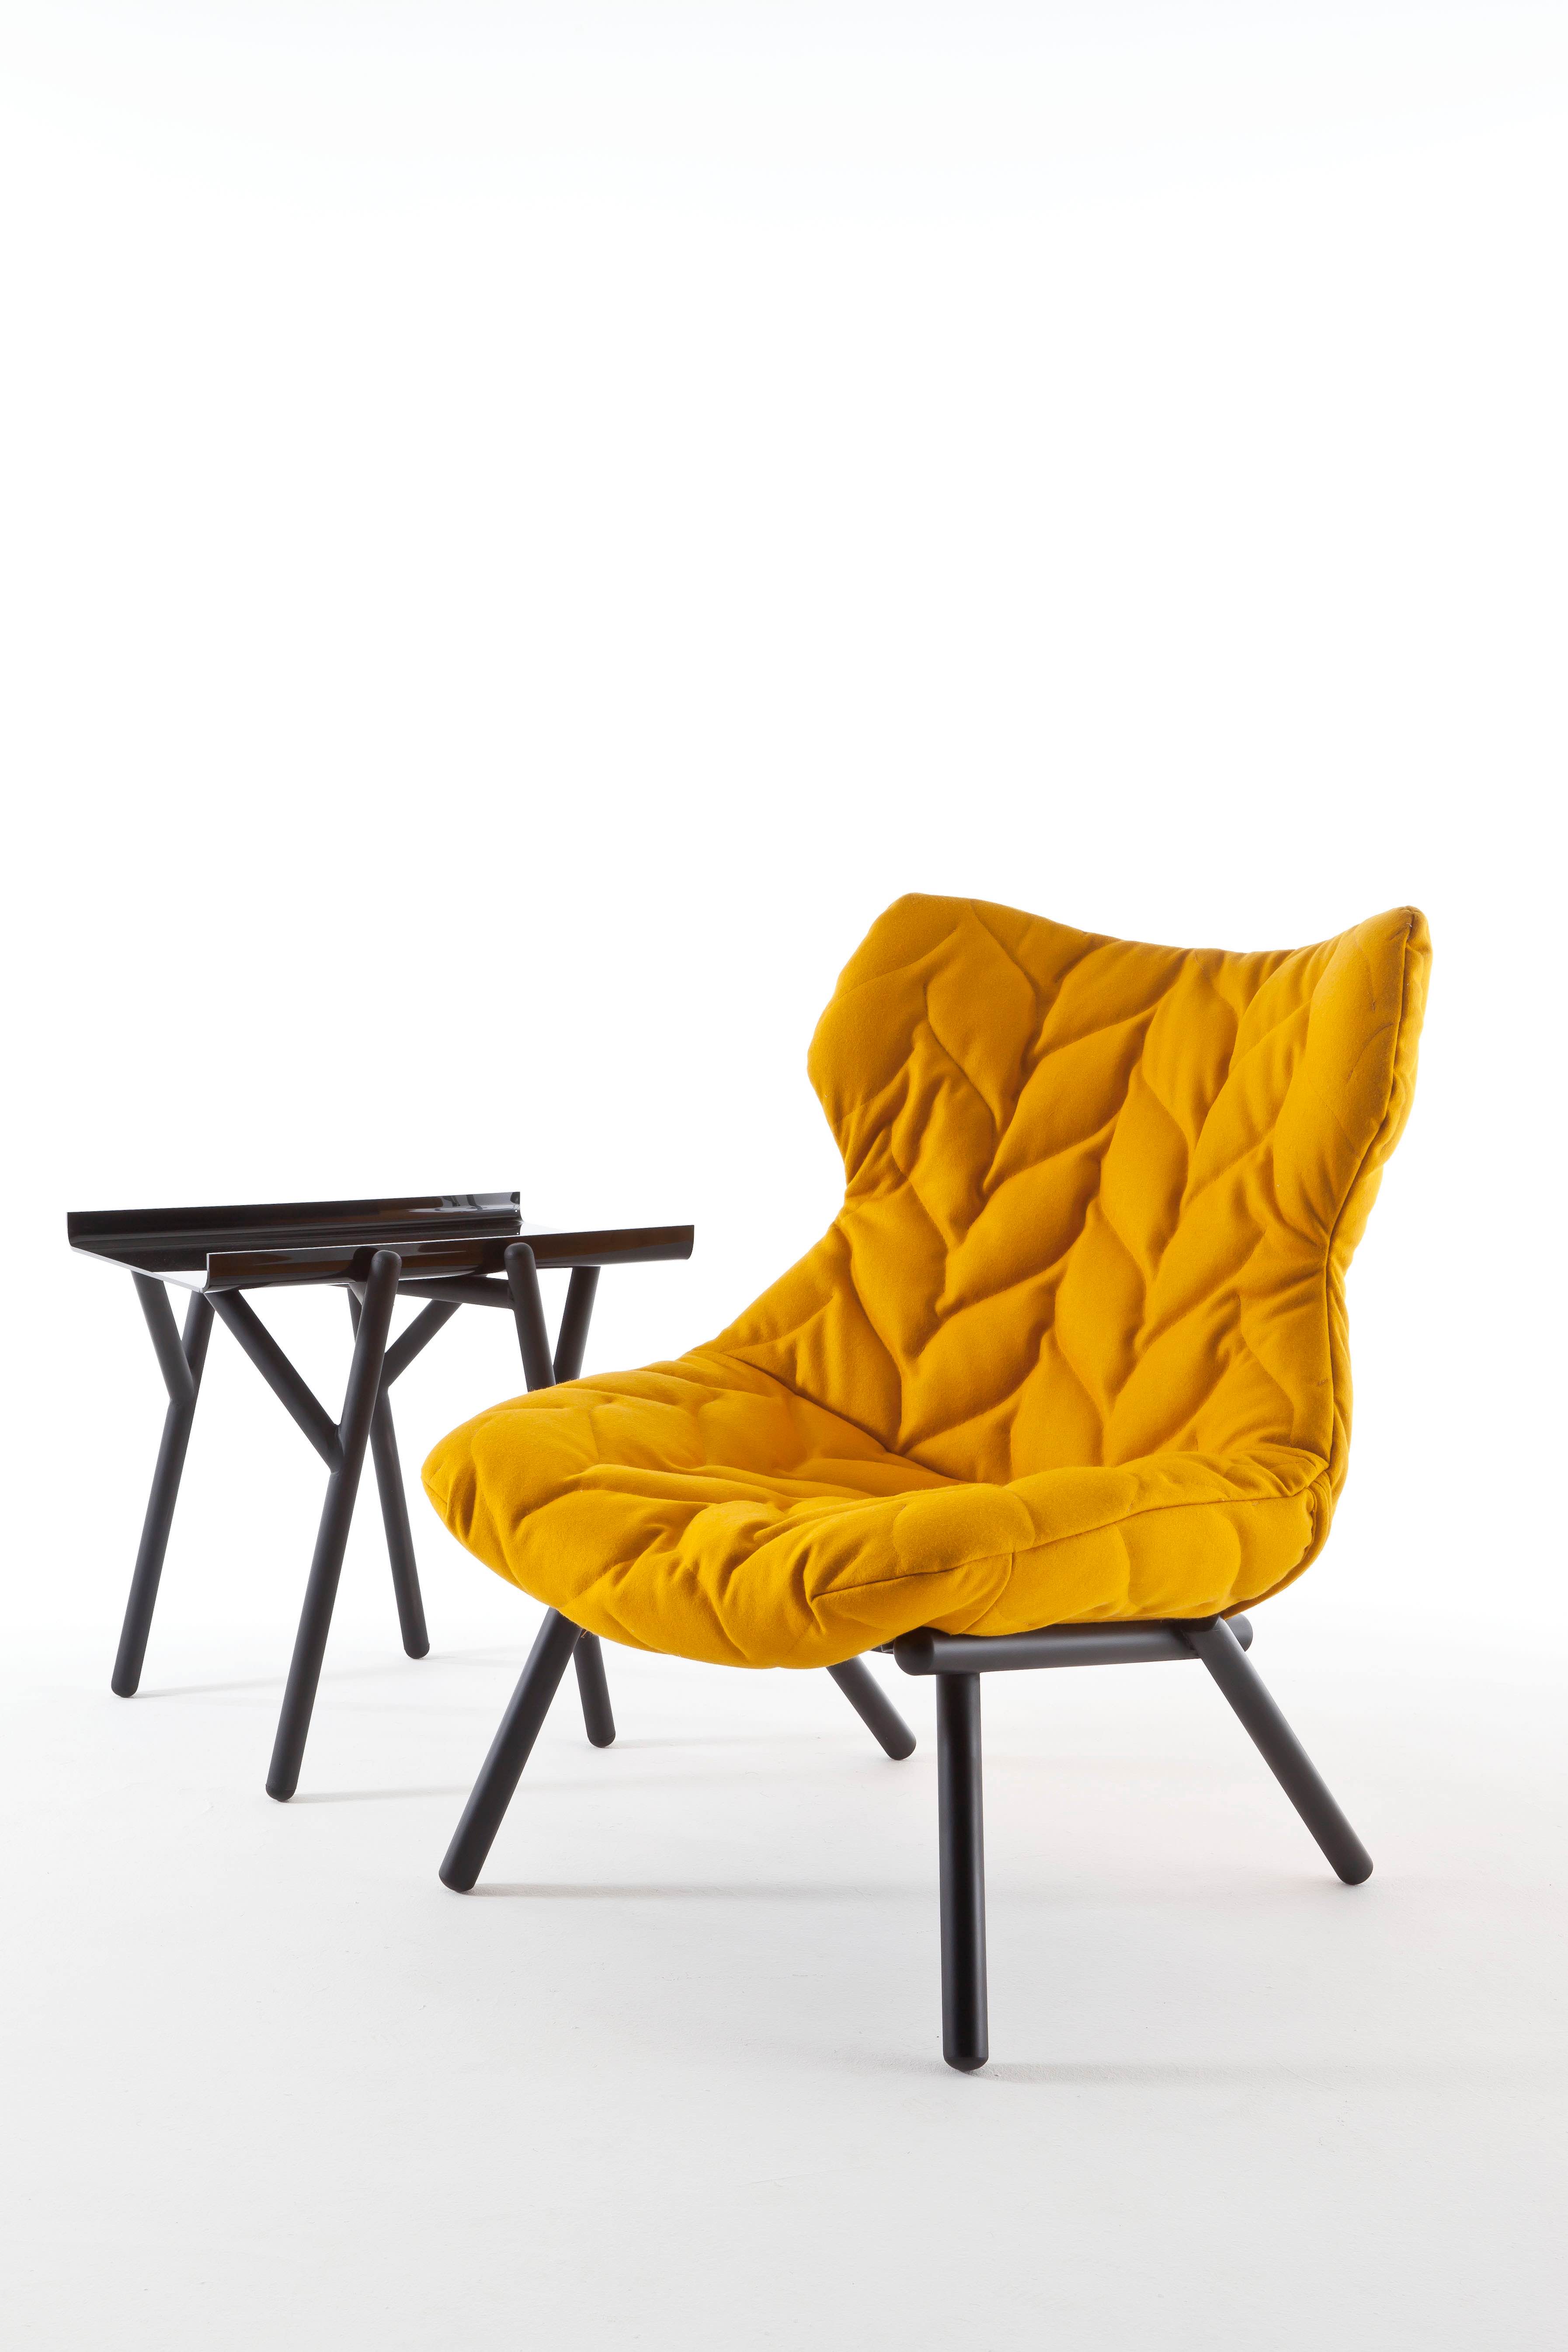 與義大利品牌 Kartell 共同推出的的 Foliage 扶手椅，取材葉子型狀的坐墊，可以包覆使用者的身軀。